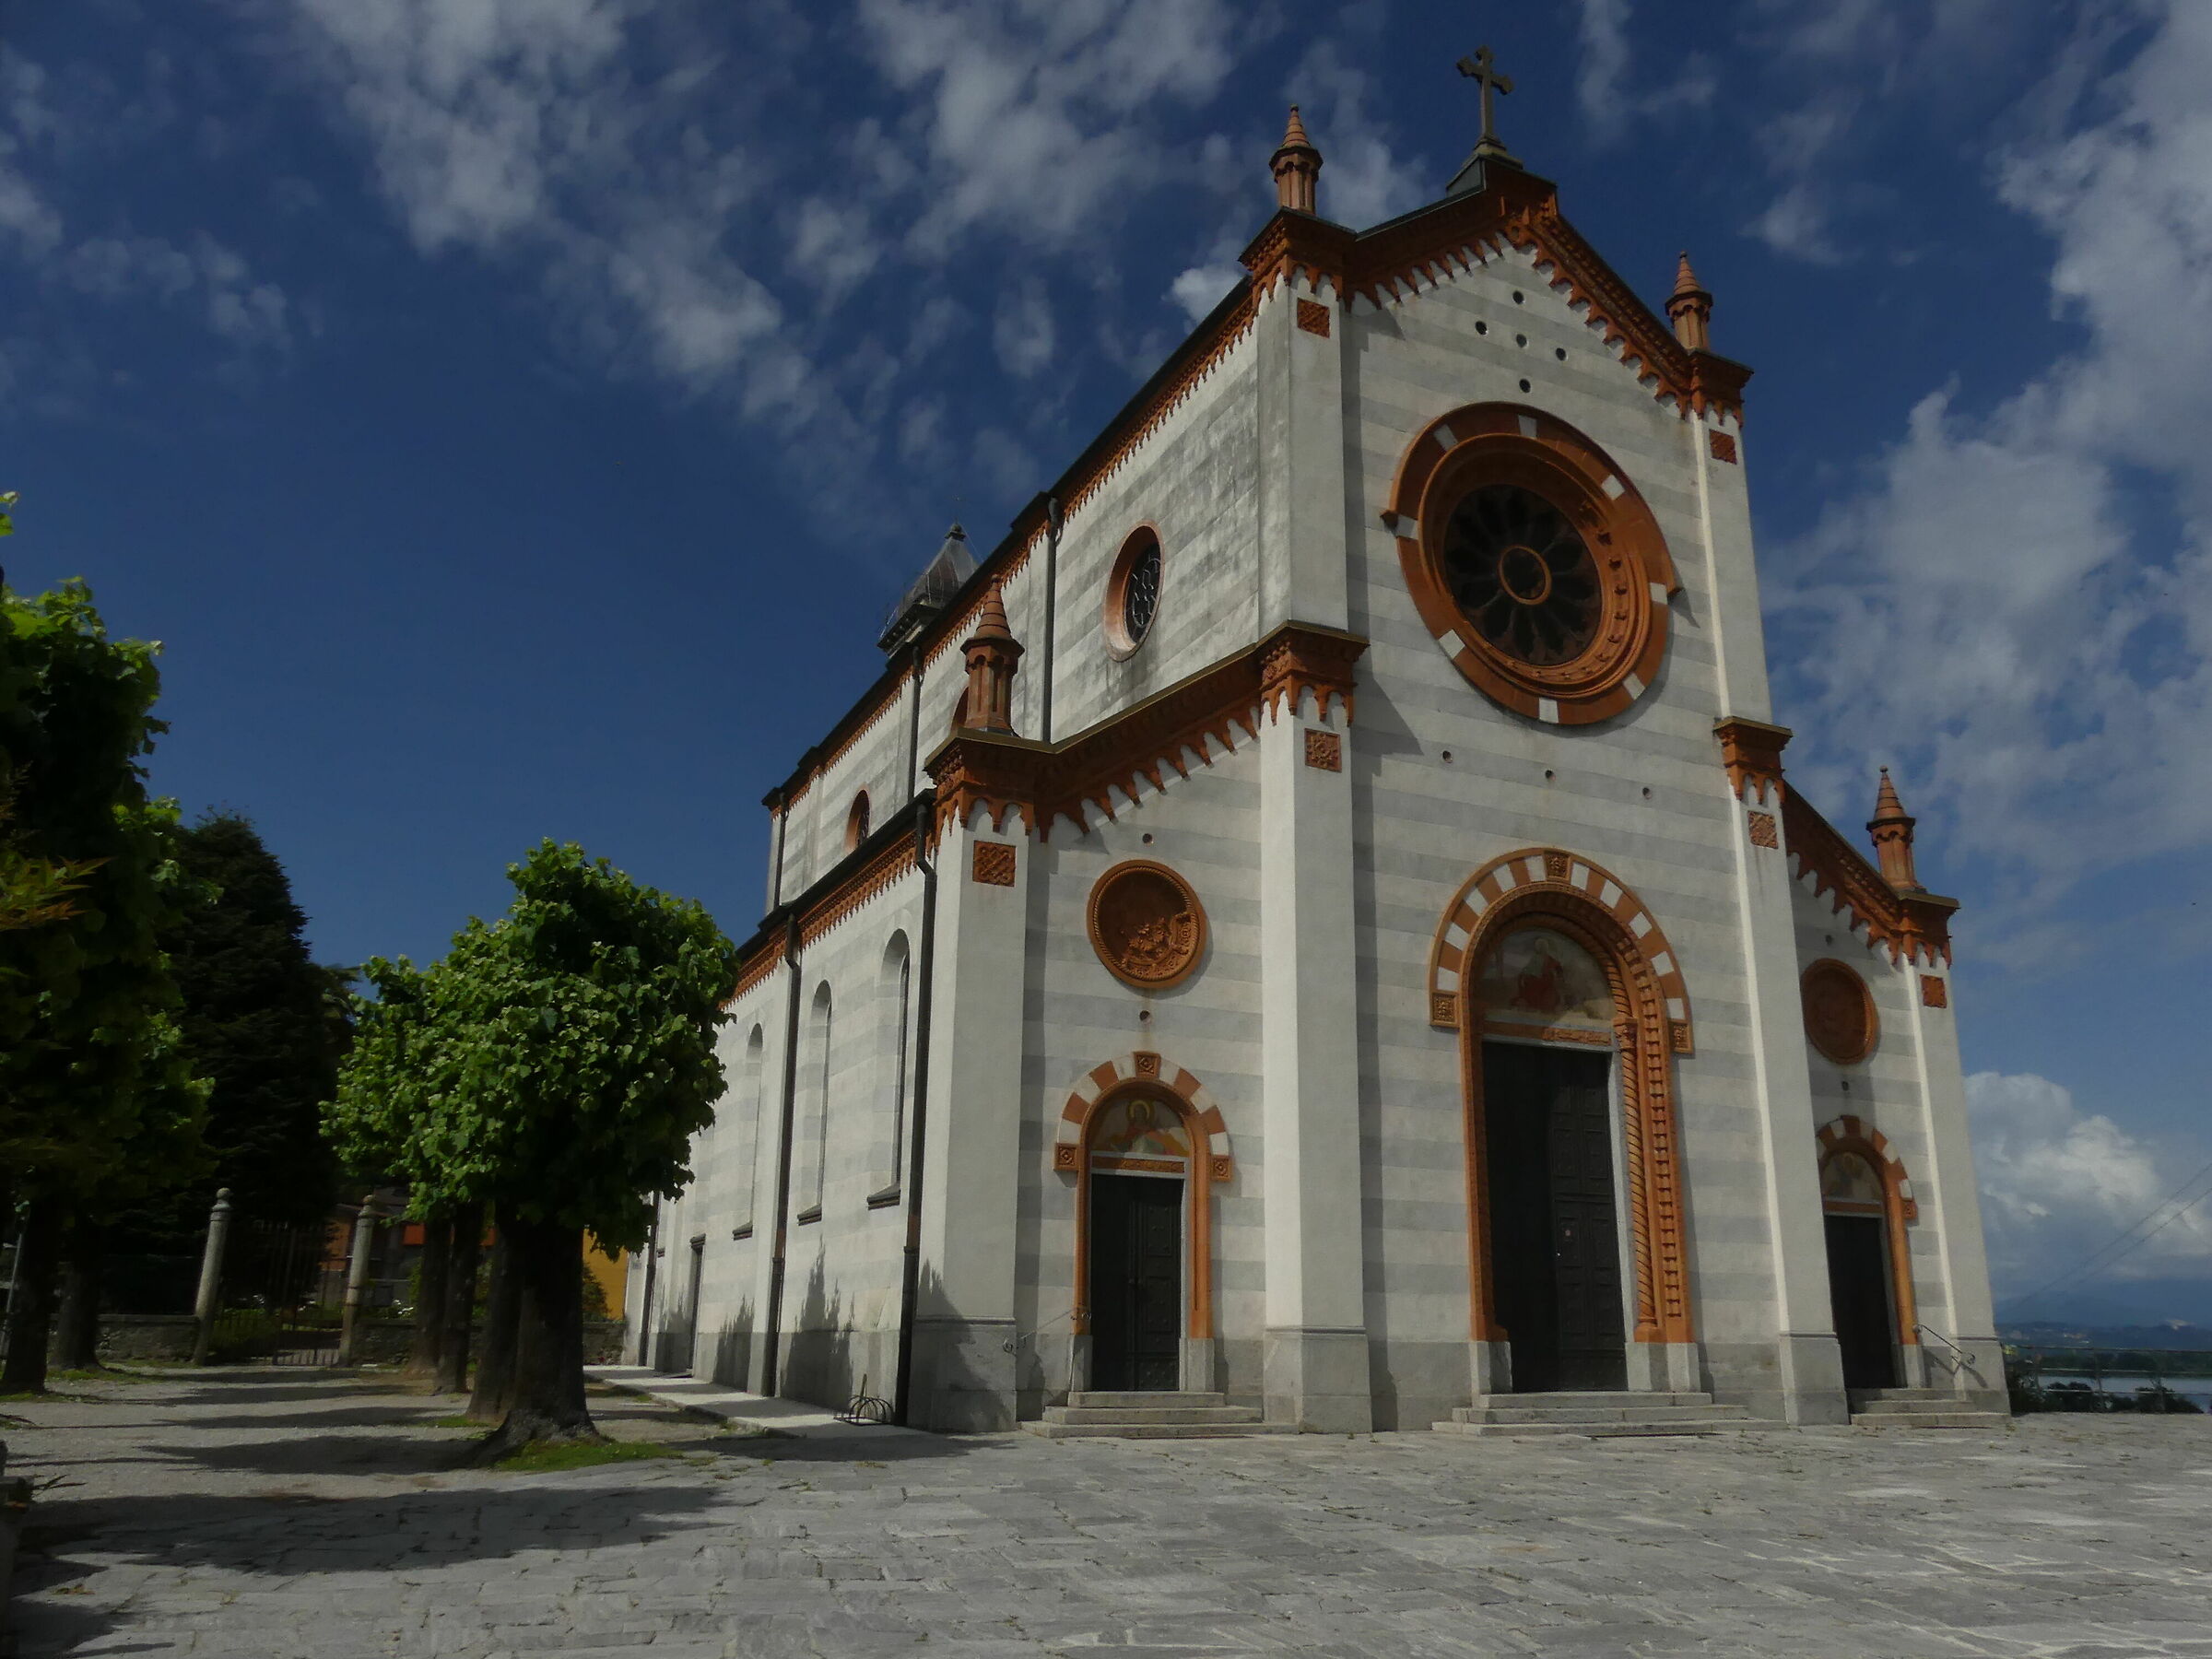 Church of Mercallo Varese province...